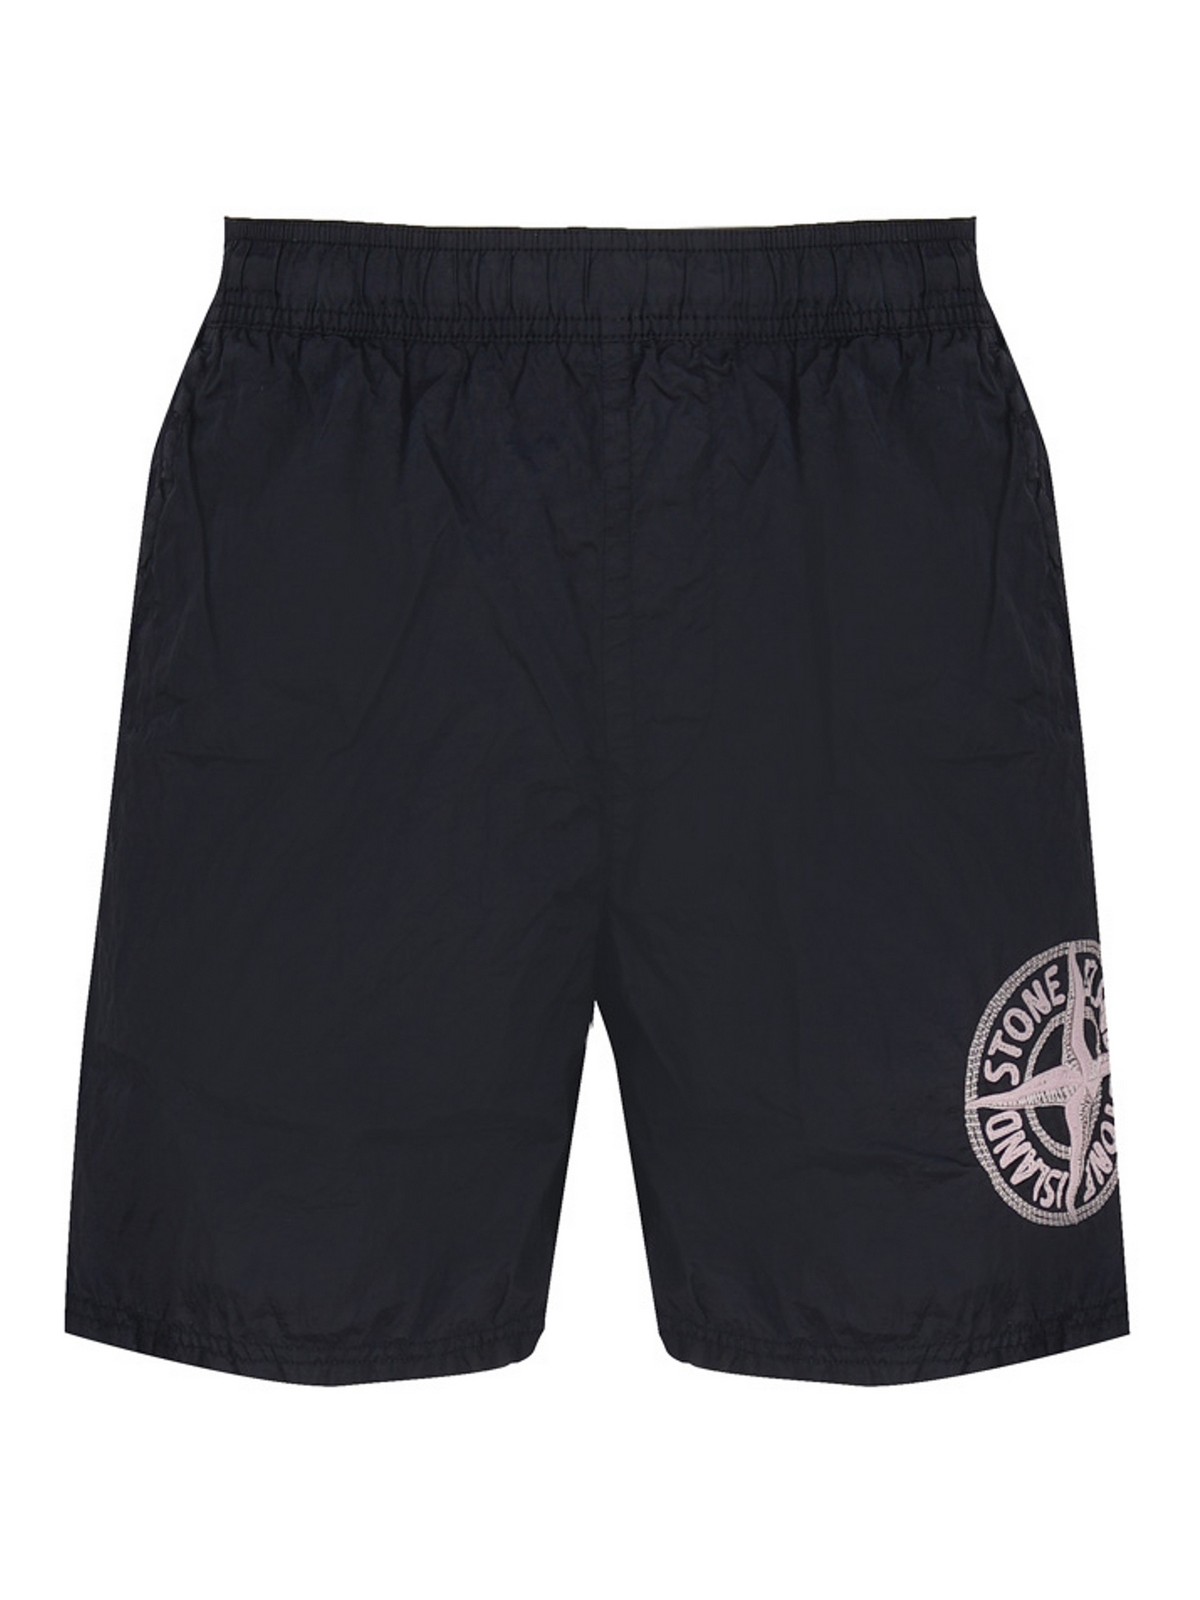 Trousers Shorts Stone Island - Swim shorts with logo - MO7815B0948V0020